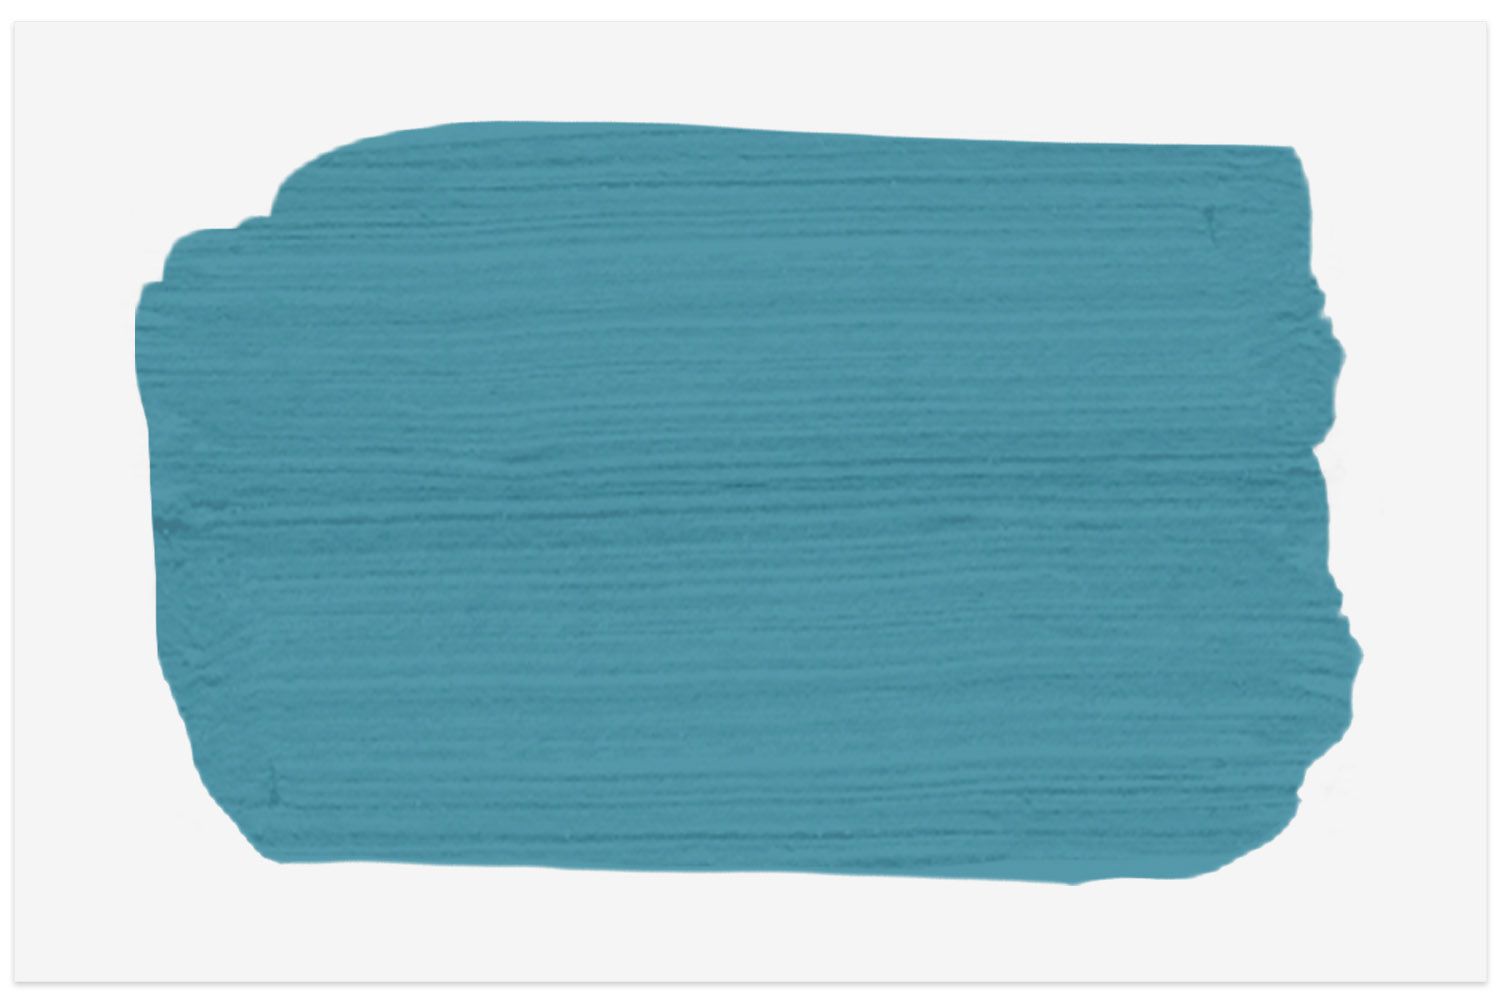 Muestra de pintura Azul Toile de Benjamin Moore